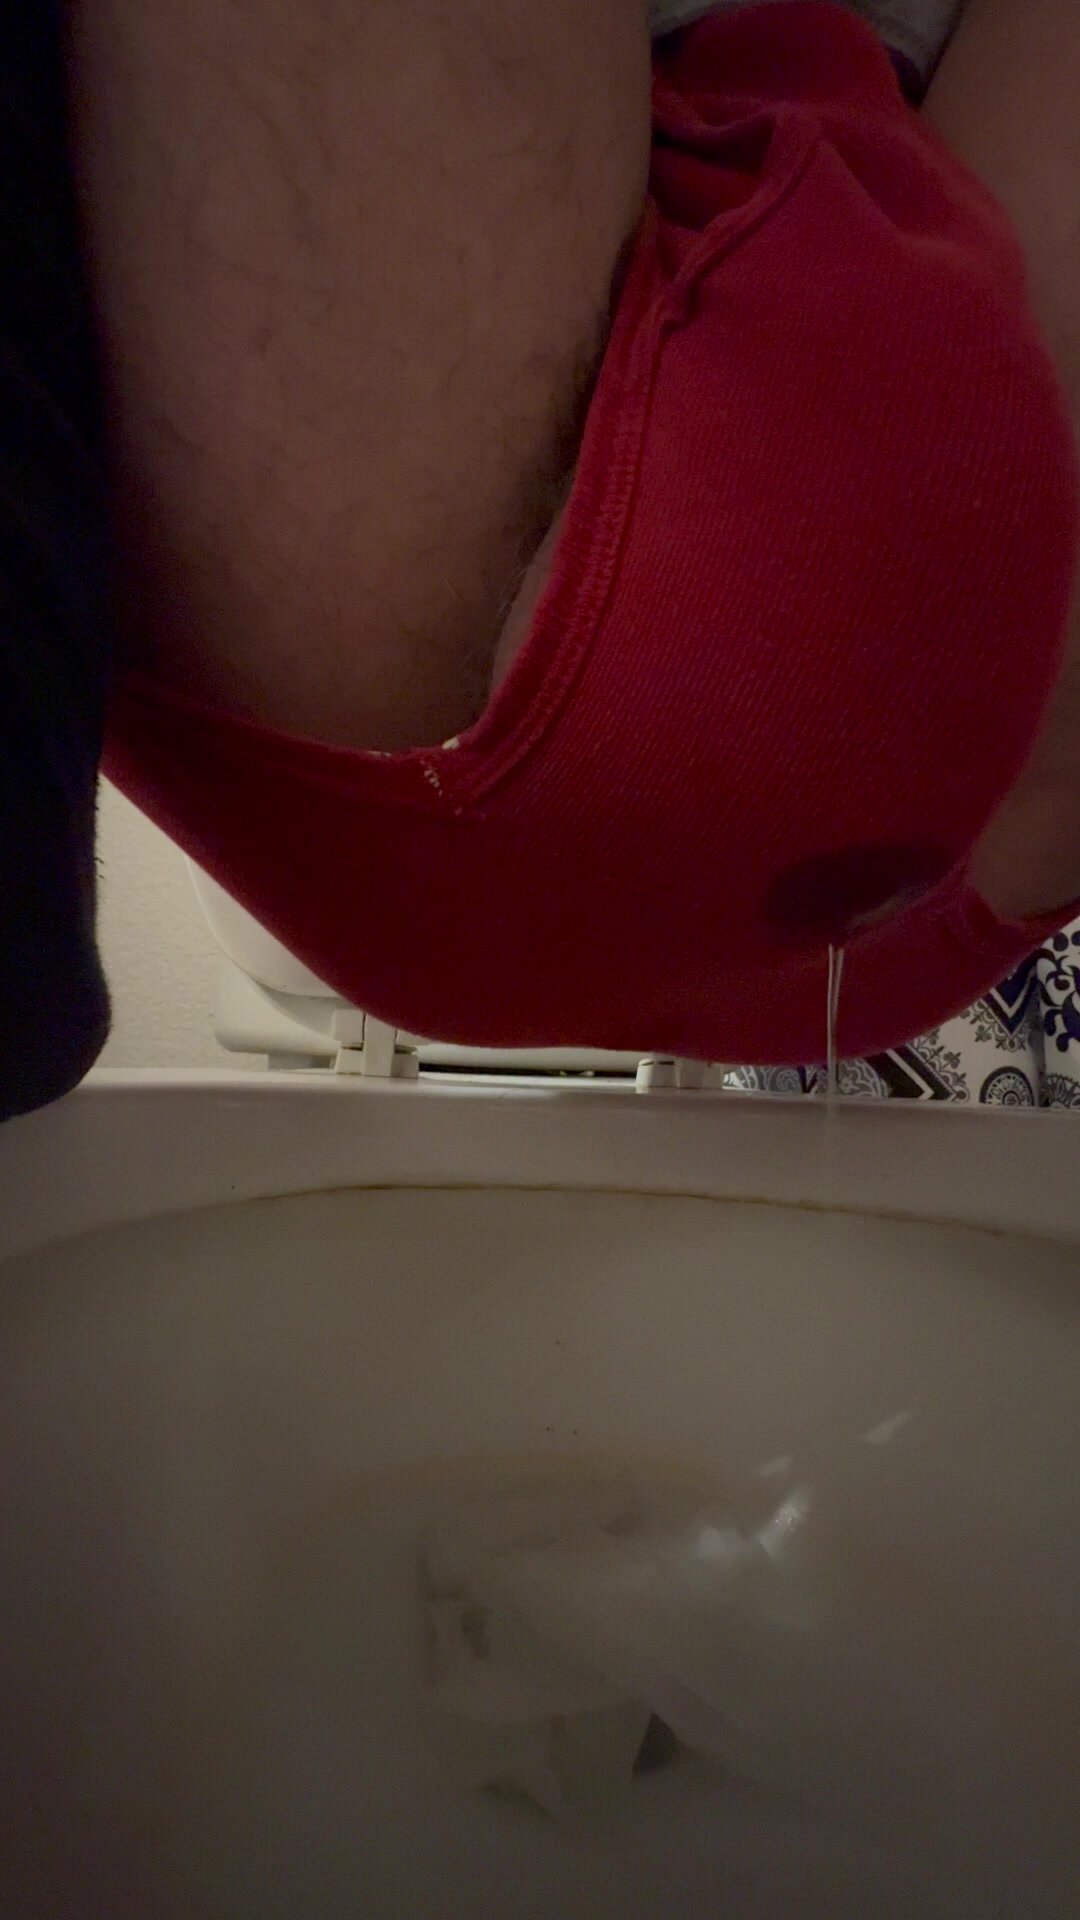 pooping my undies - video 3